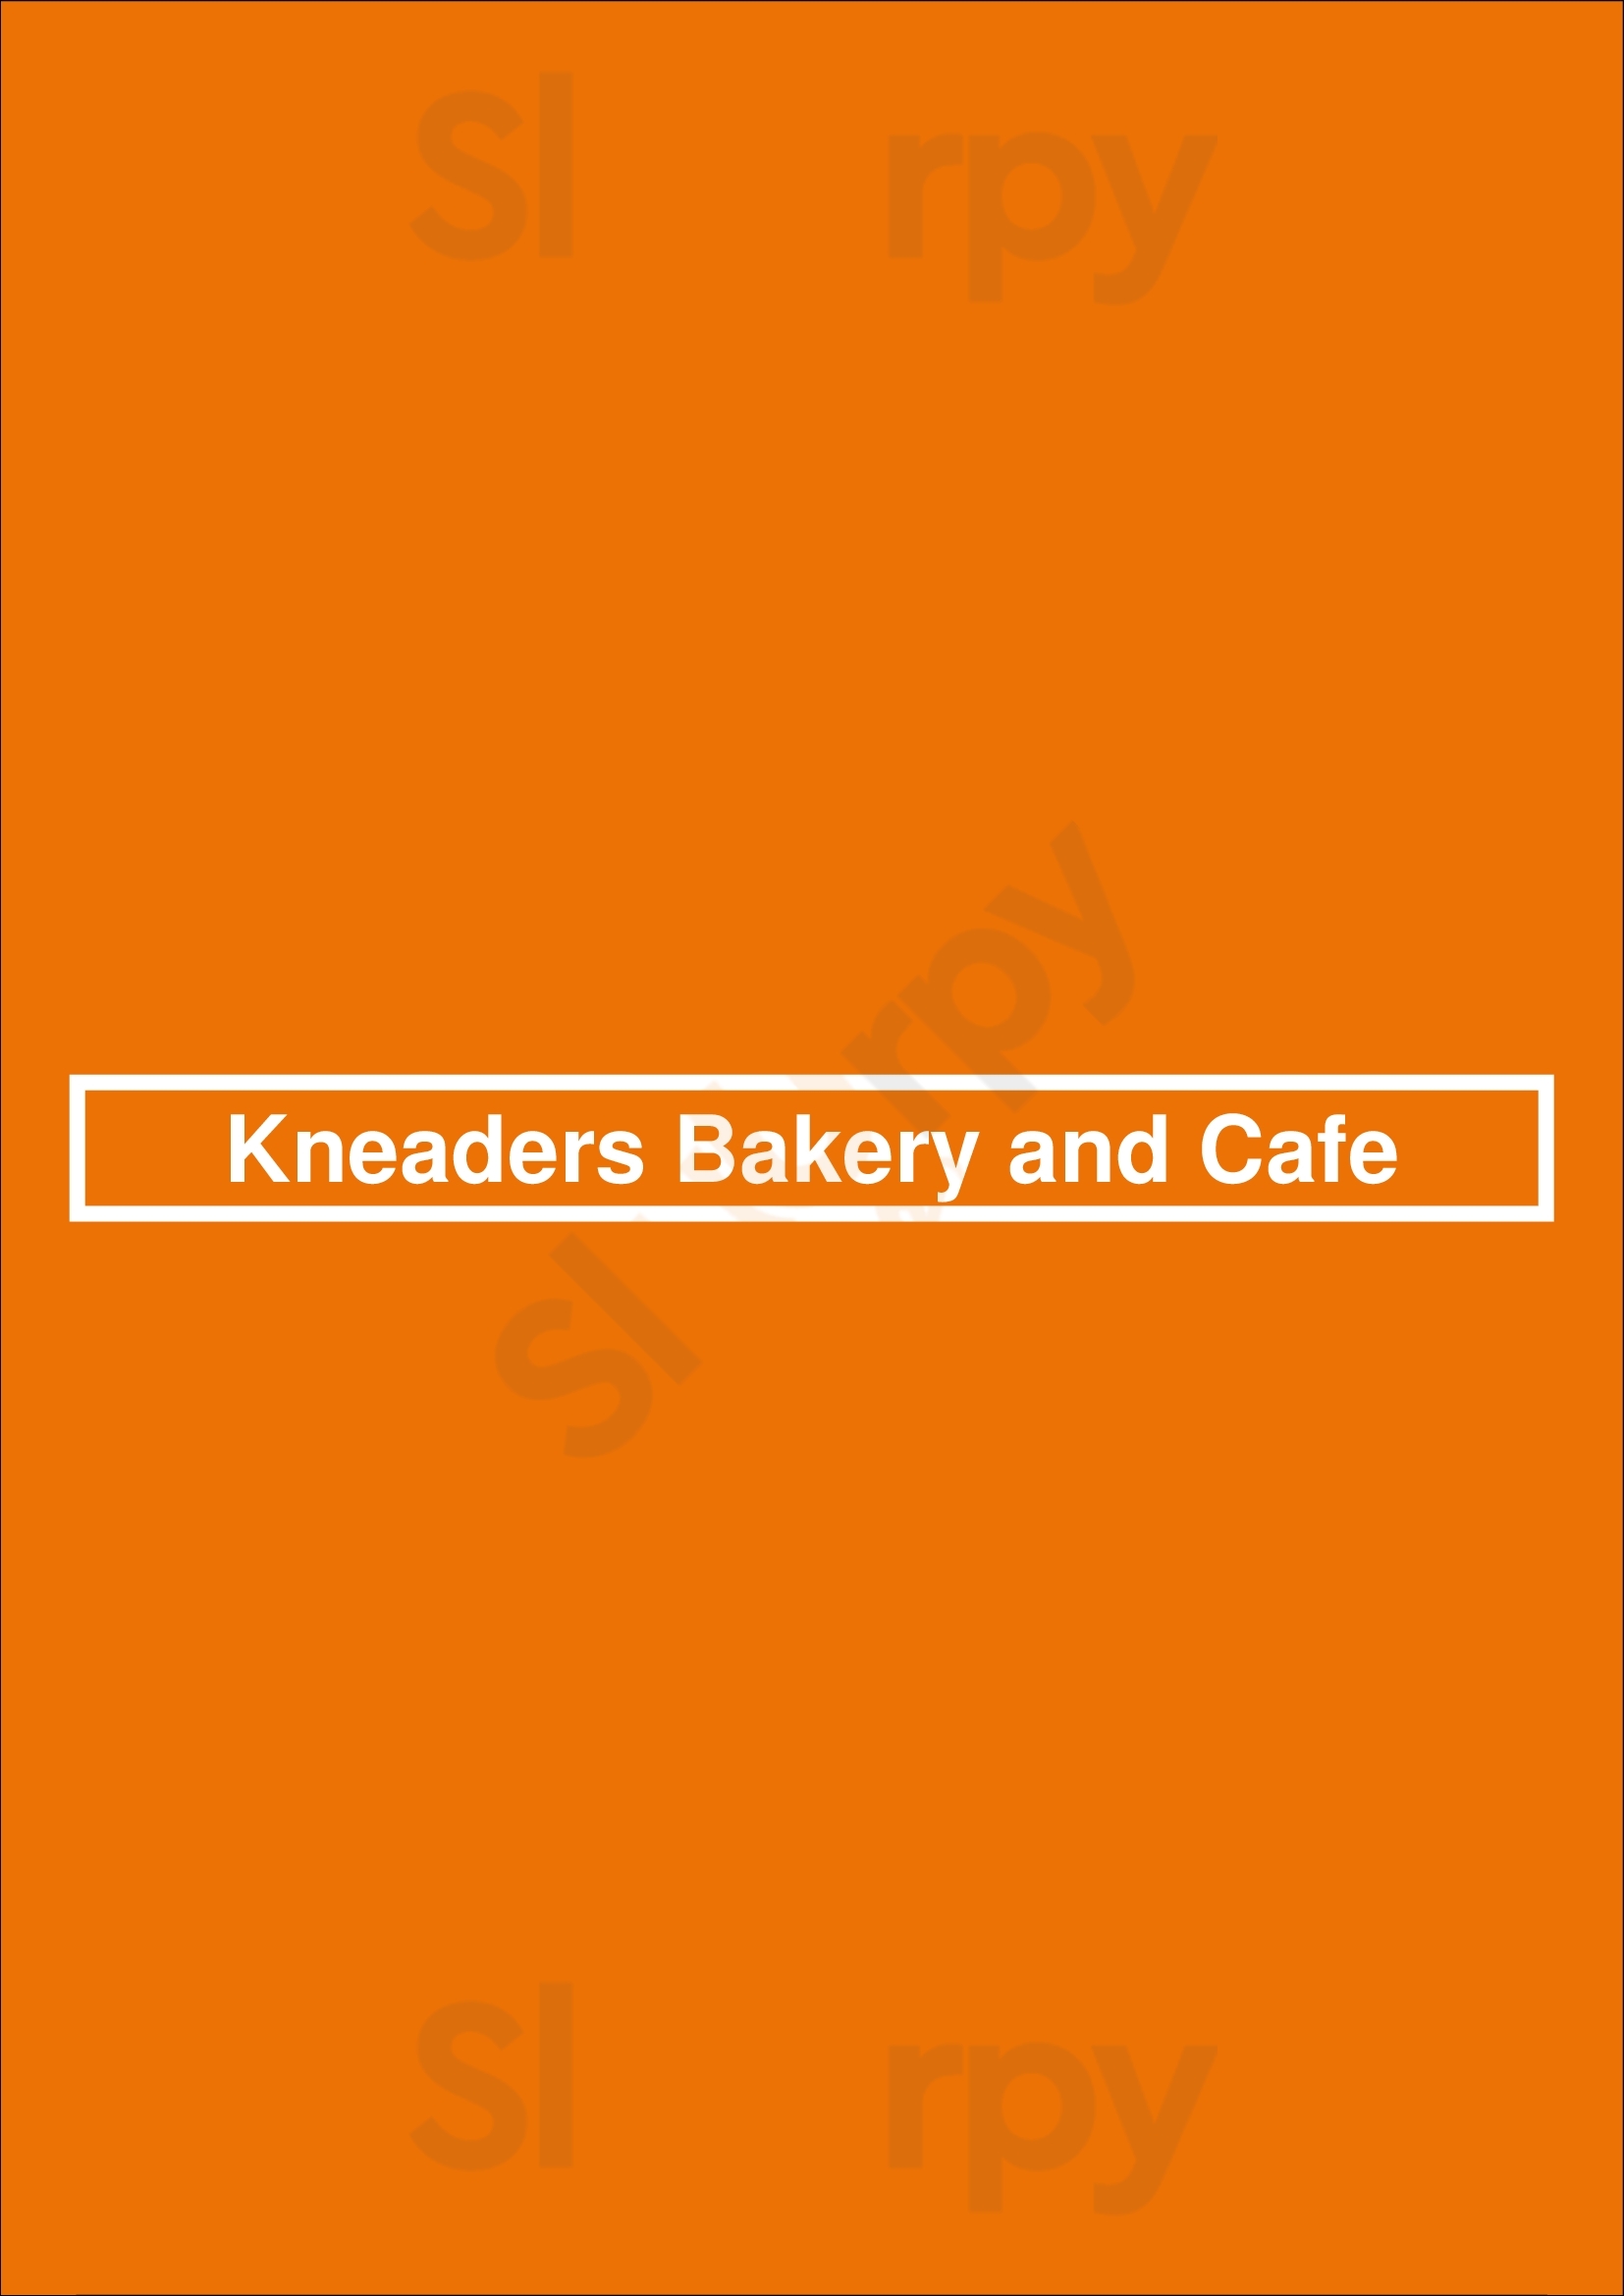 Kneaders Bakery And Cafe San Antonio Menu - 1